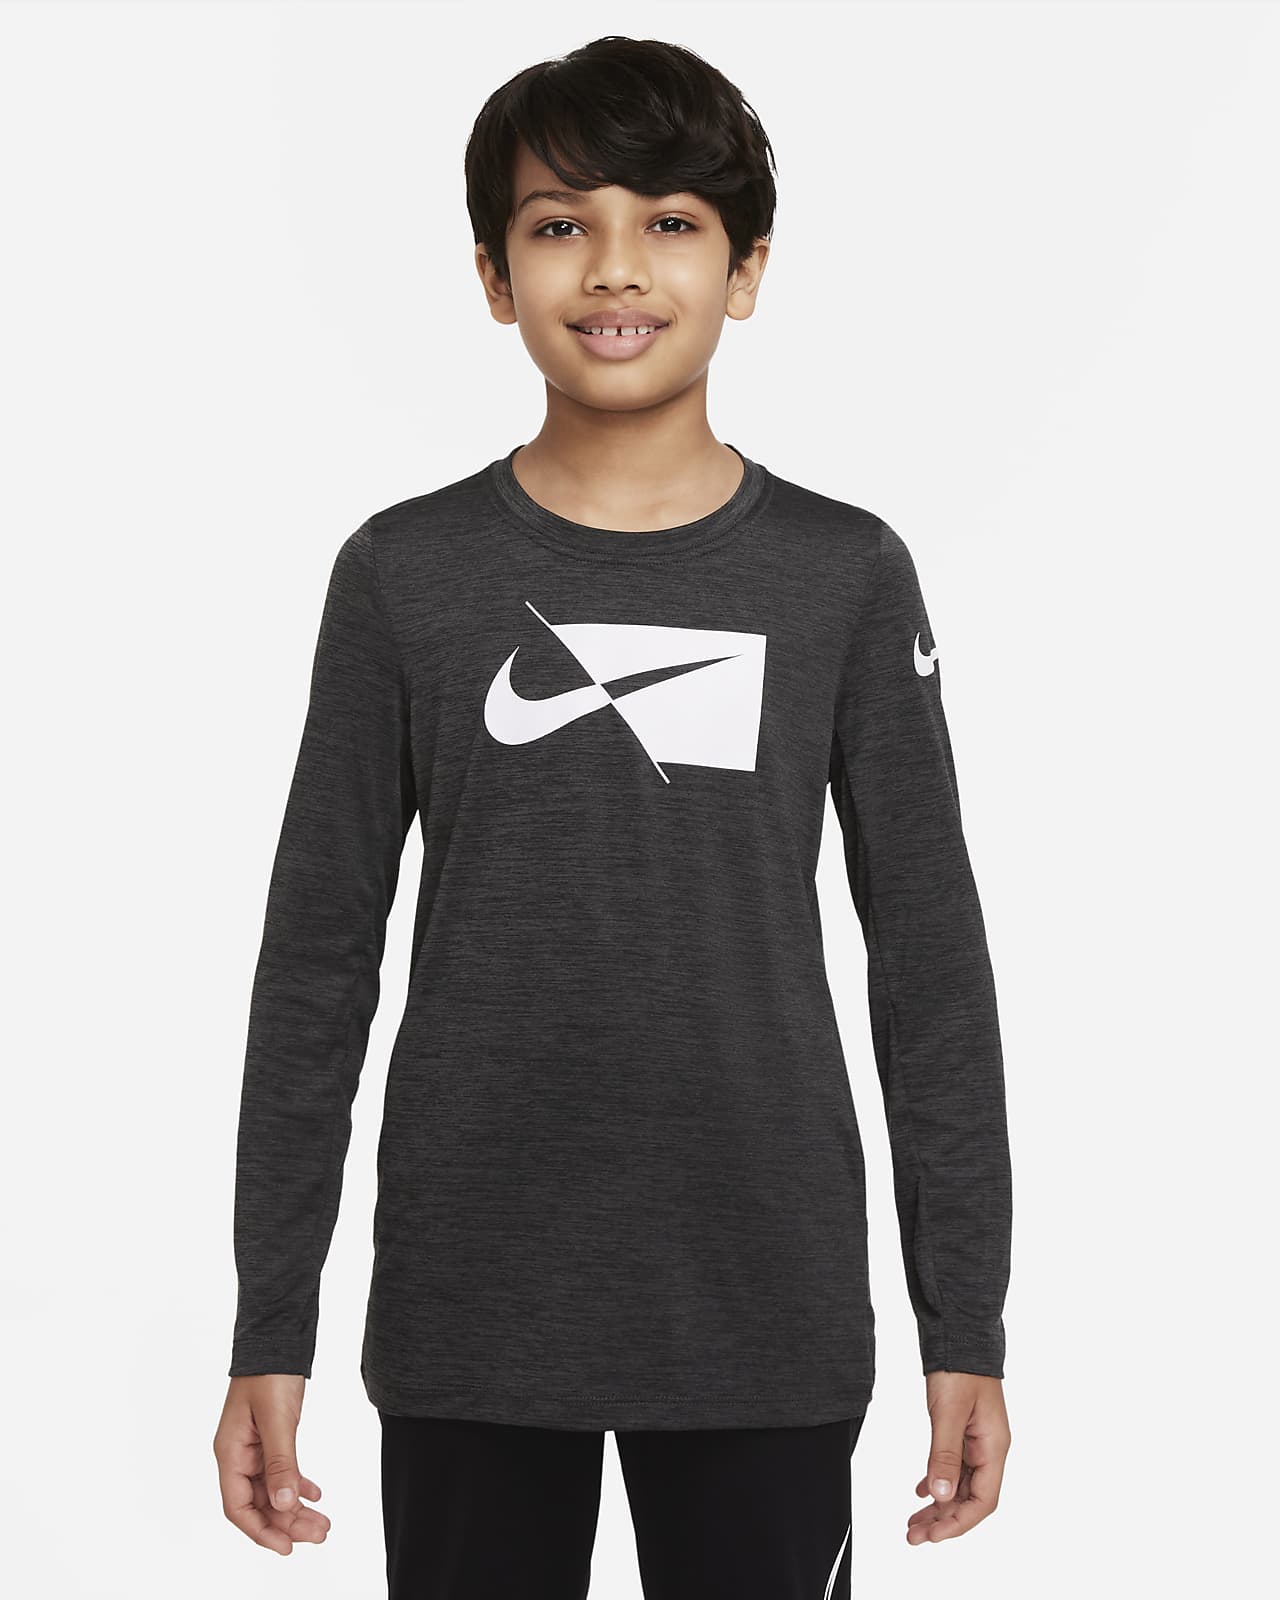 เสื้อเทรนนิ่งแขนยาวเด็กโต Nike Dri-FI (ชาย)